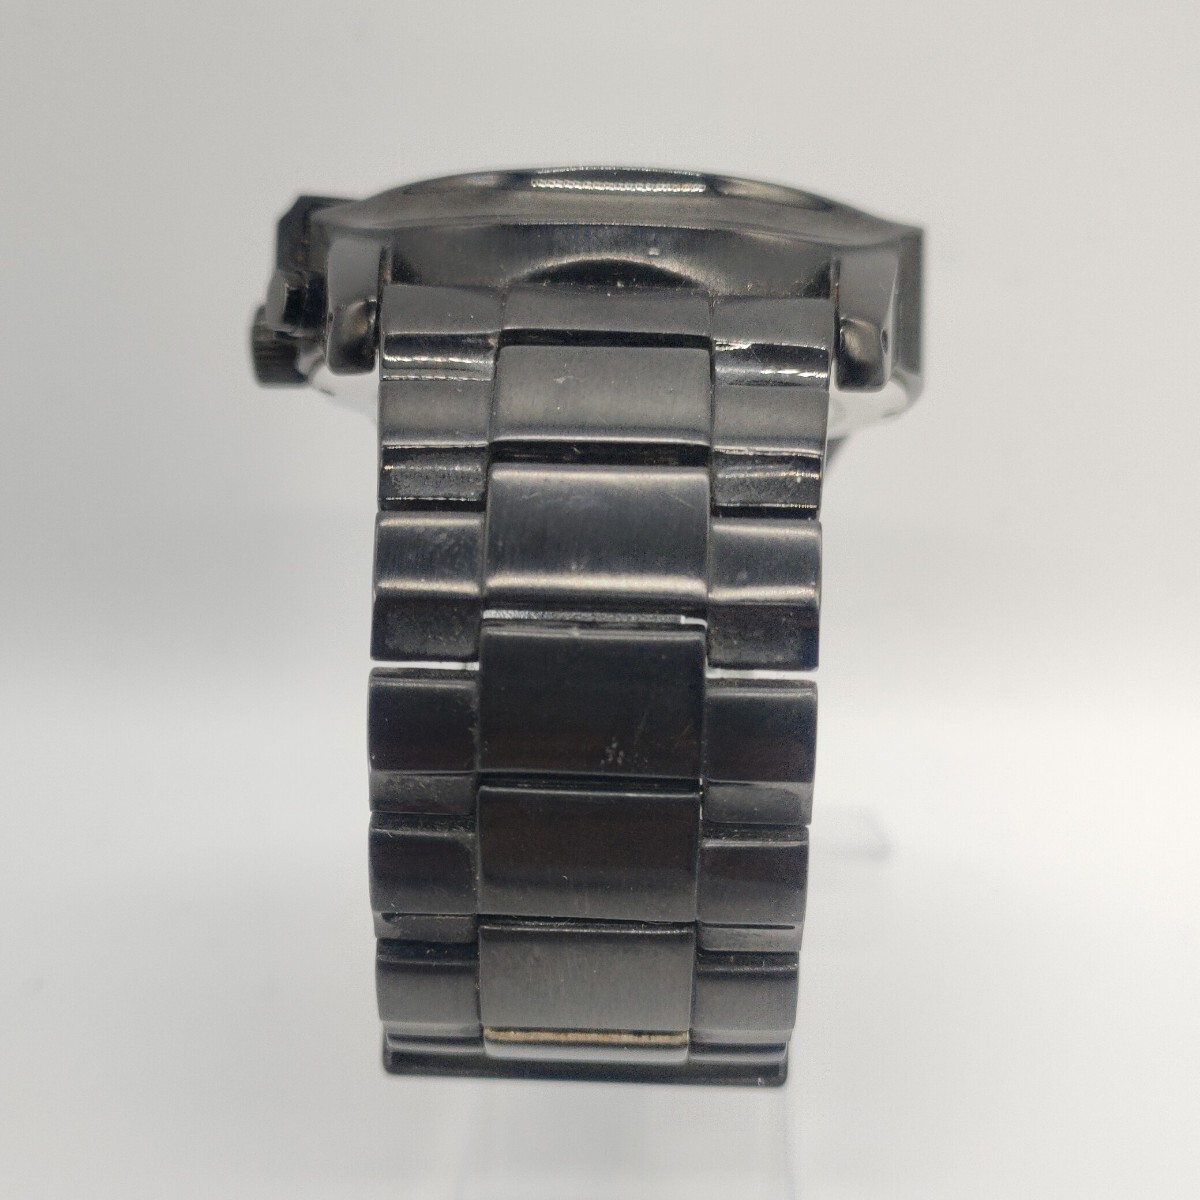 91 DIESEL メンズ 腕時計 時計 ディーゼル DZ-4180 クオーツ QUARTZ クロノグラフ 黒文字盤 3針 アナログ 10BAR ONLY THE BRAVE SCHの画像5